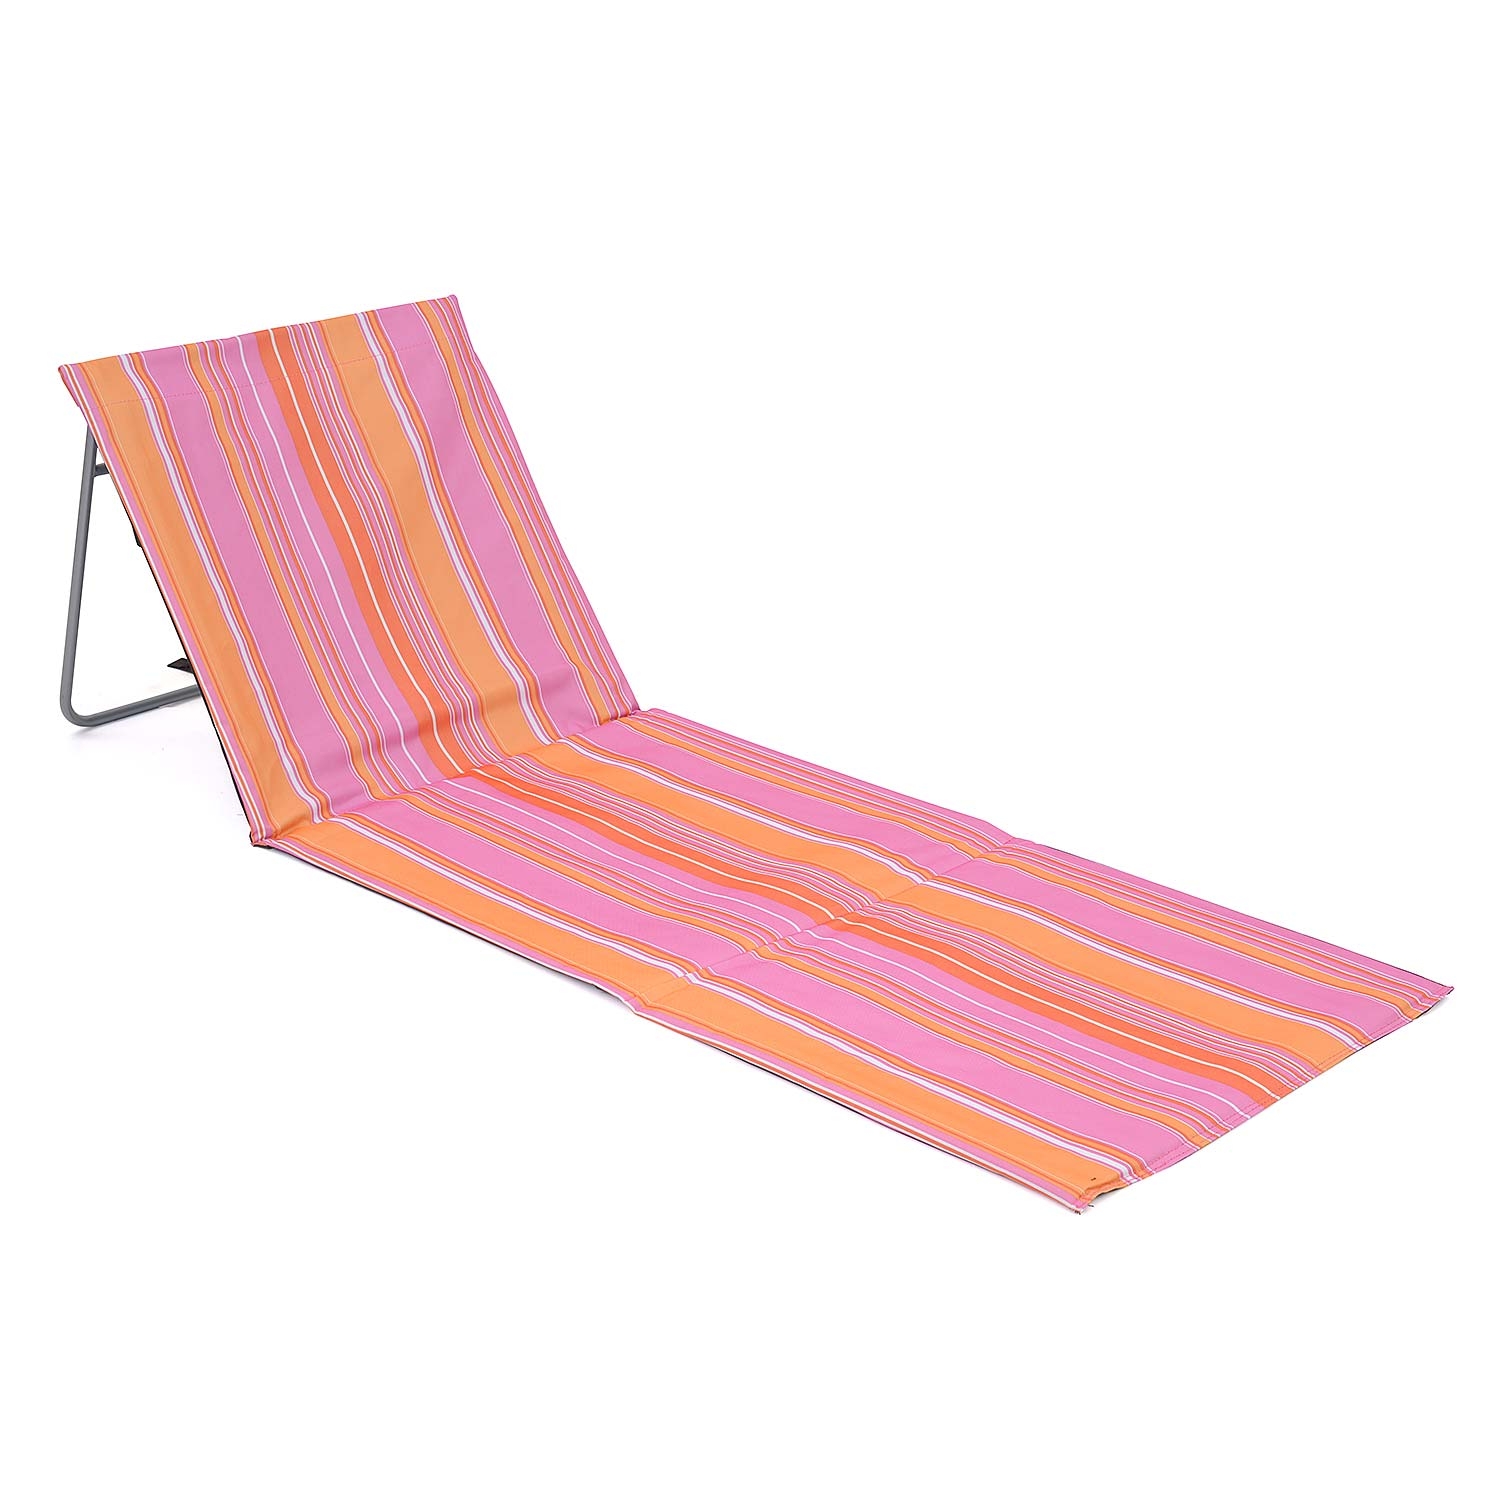 Folding Sun Lounger Beach Mat With Backrest - Pink